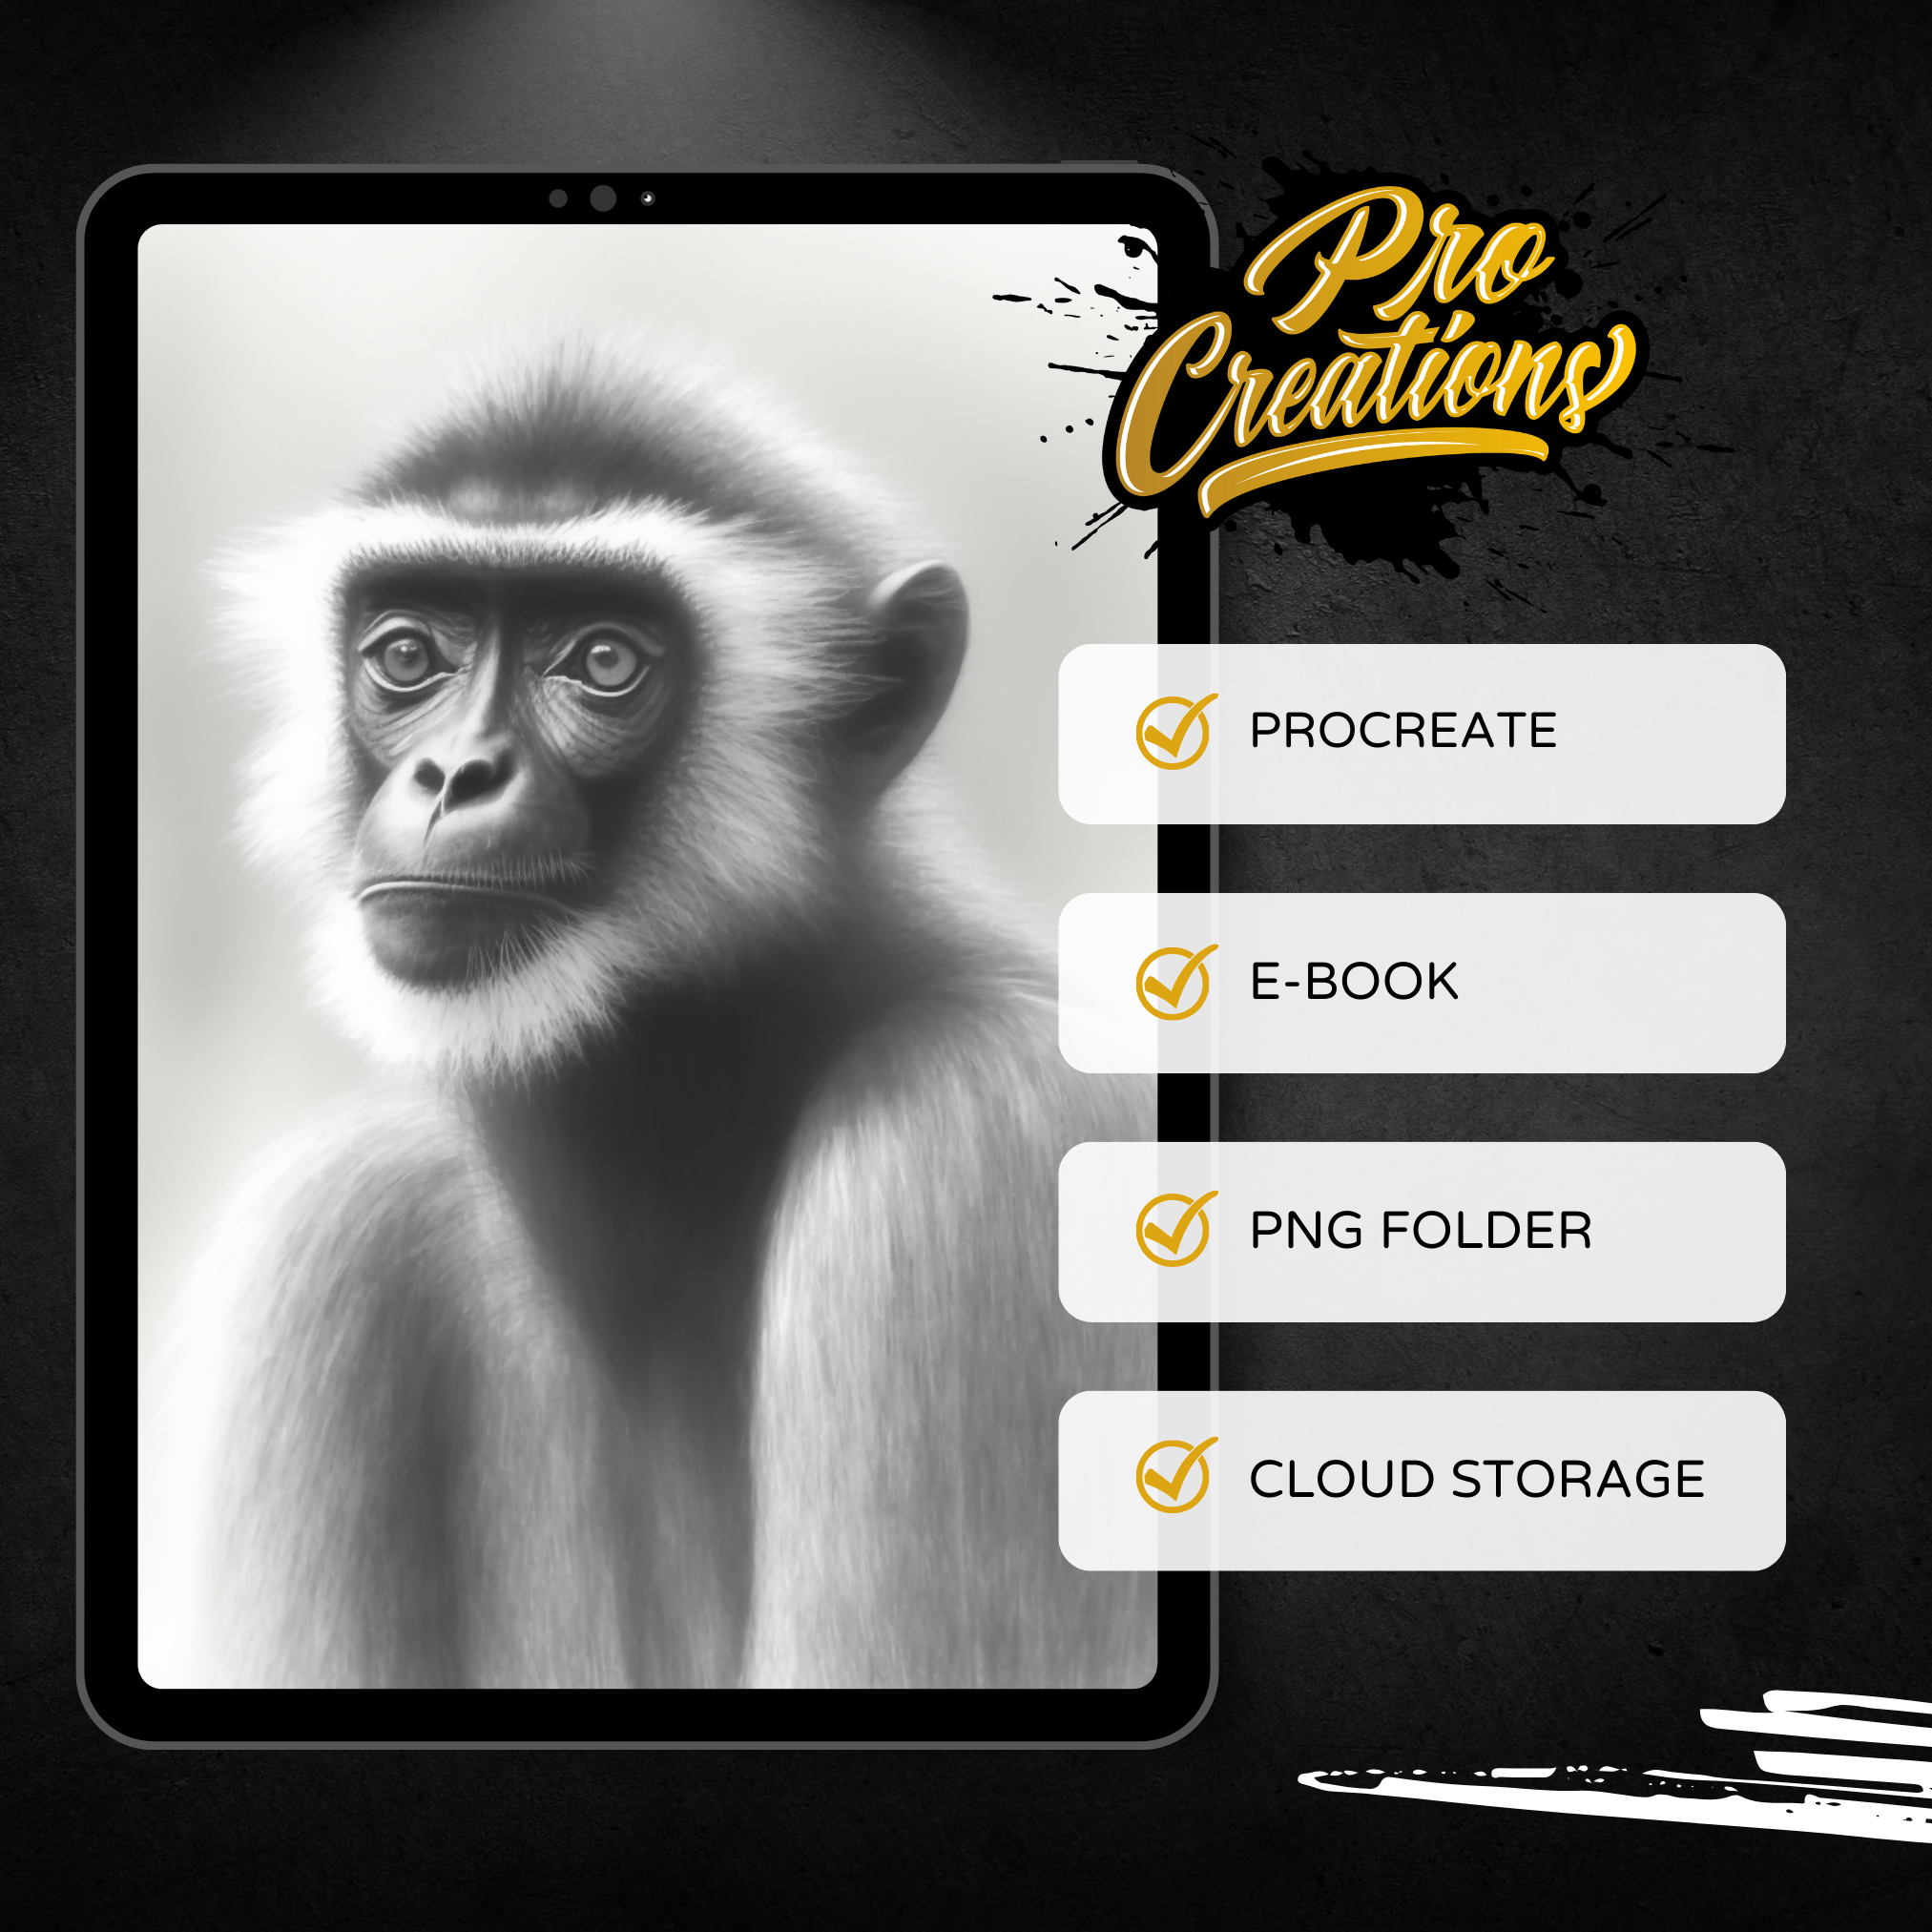 Digitale Referenzdesignsammlung für Primaten: 100 Procreate- und Skizzenbuchbilder